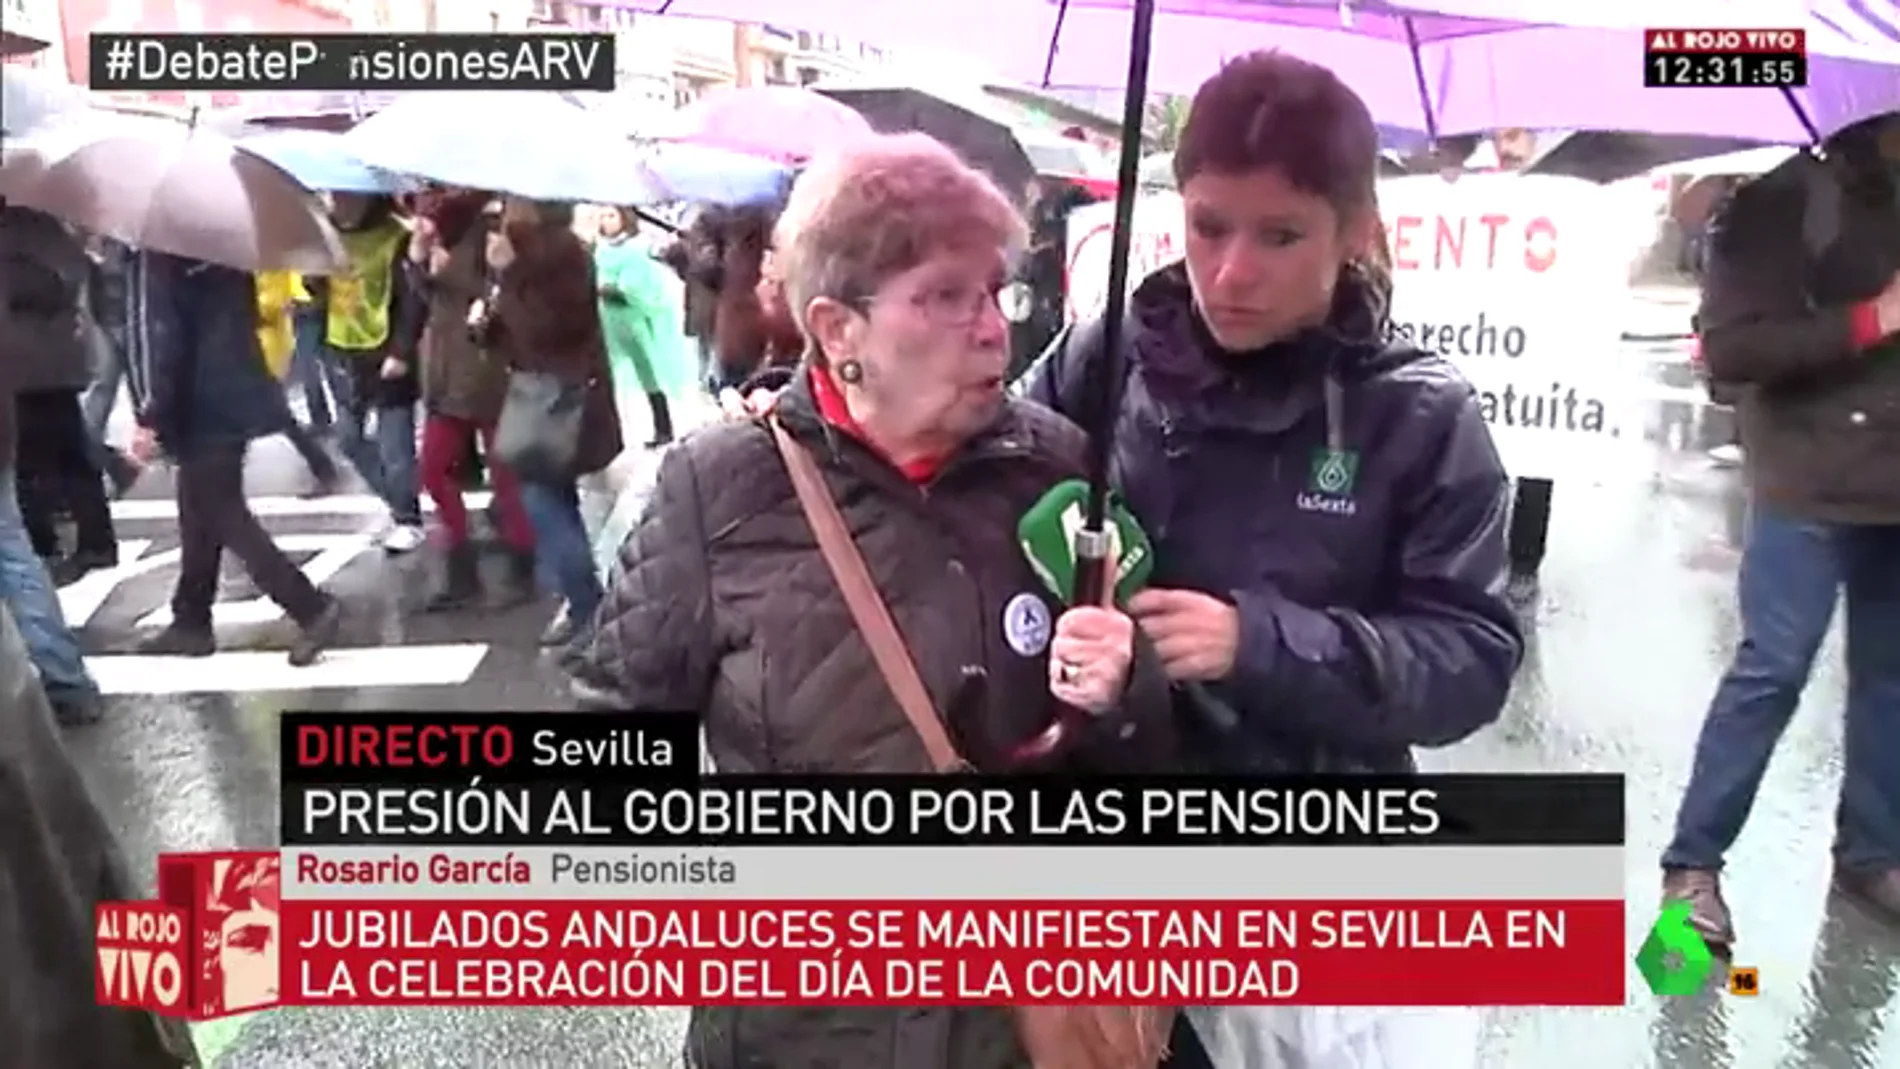 Rosario García, pensionista